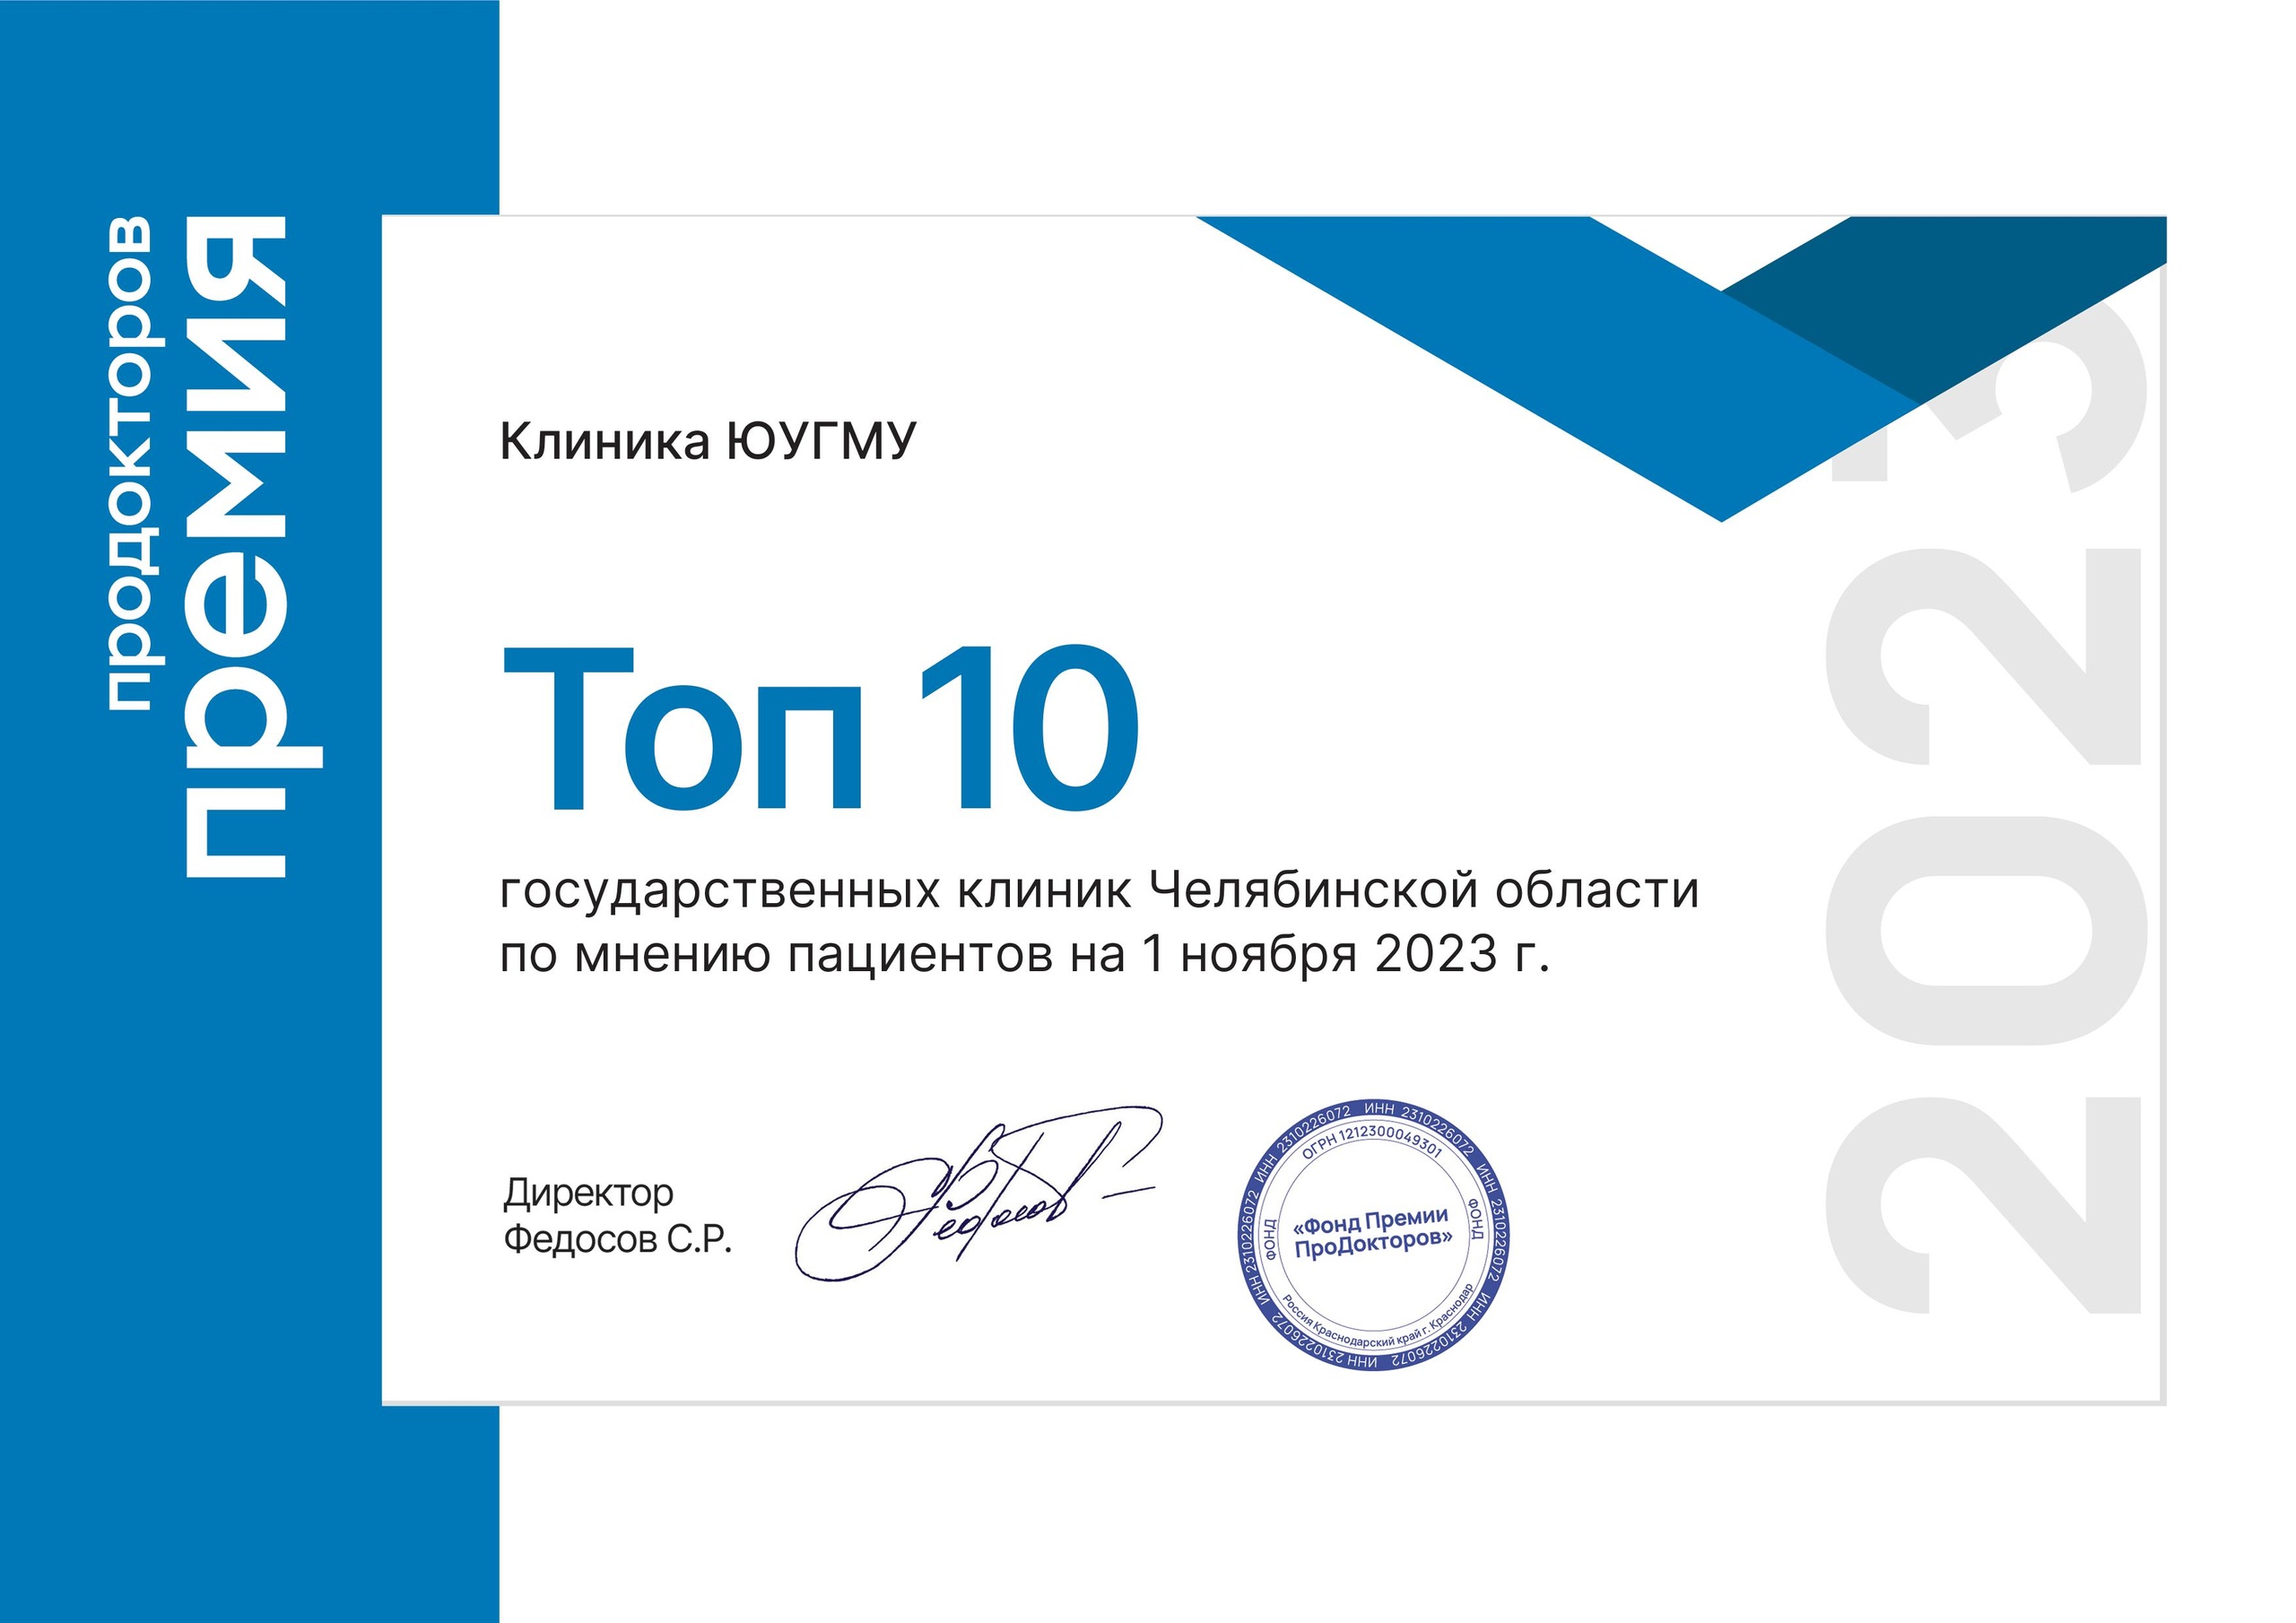 Клиника ЮУГМУ получила премию «ПроДокторов-2023» и вошла в ТОП-10 лучших клиник Южного Урала по мнению пациентов